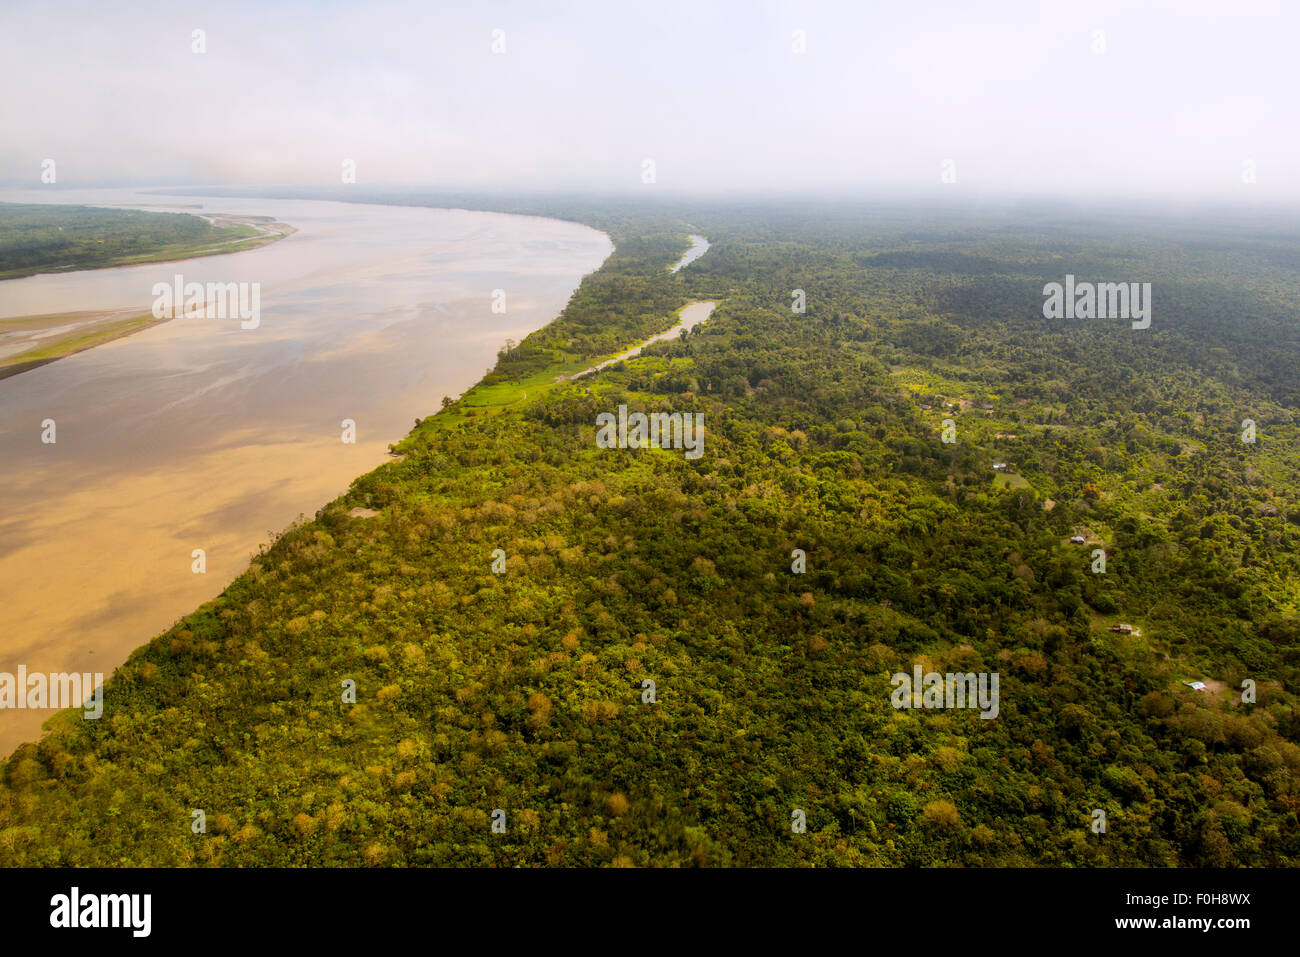 Antena del Río Amazonas, con asentamientos y bosque secundario, cerca de Iquitos, Perú Foto de stock